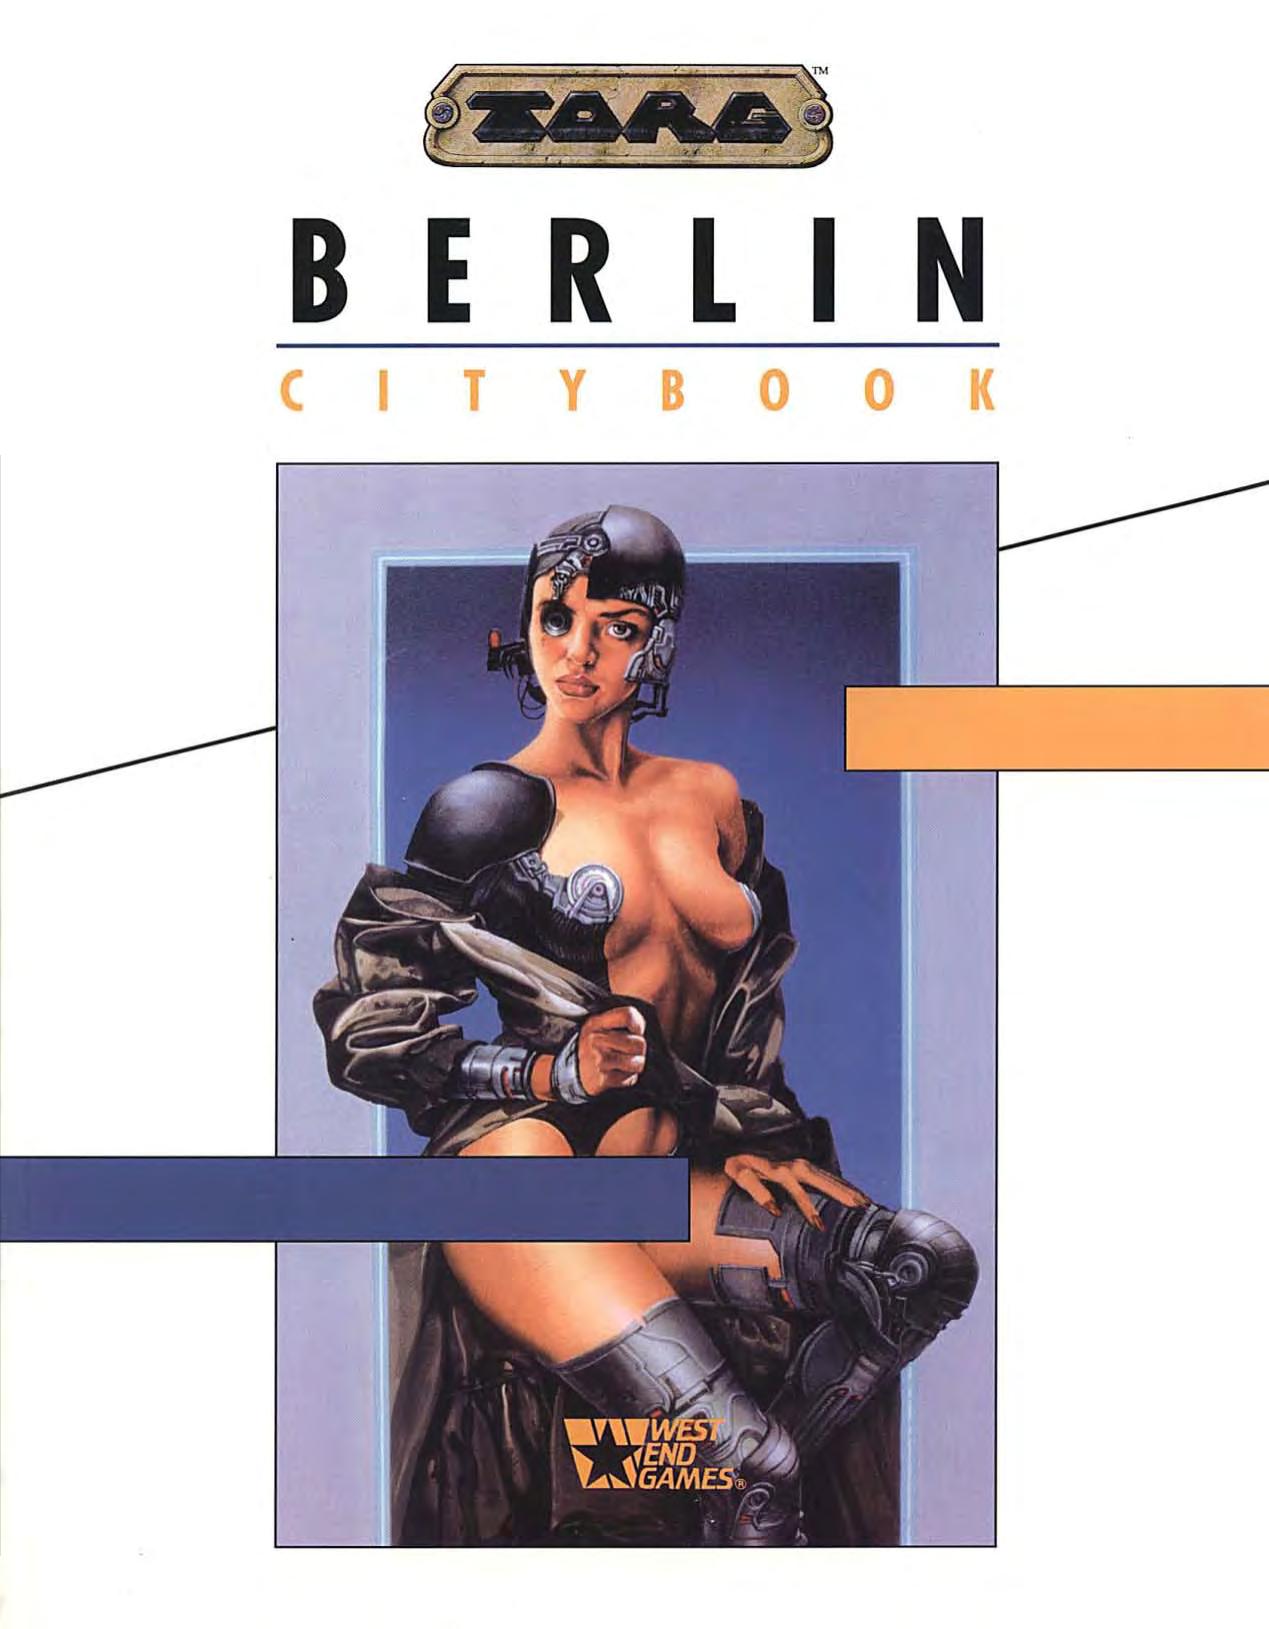 Berlin Citybook